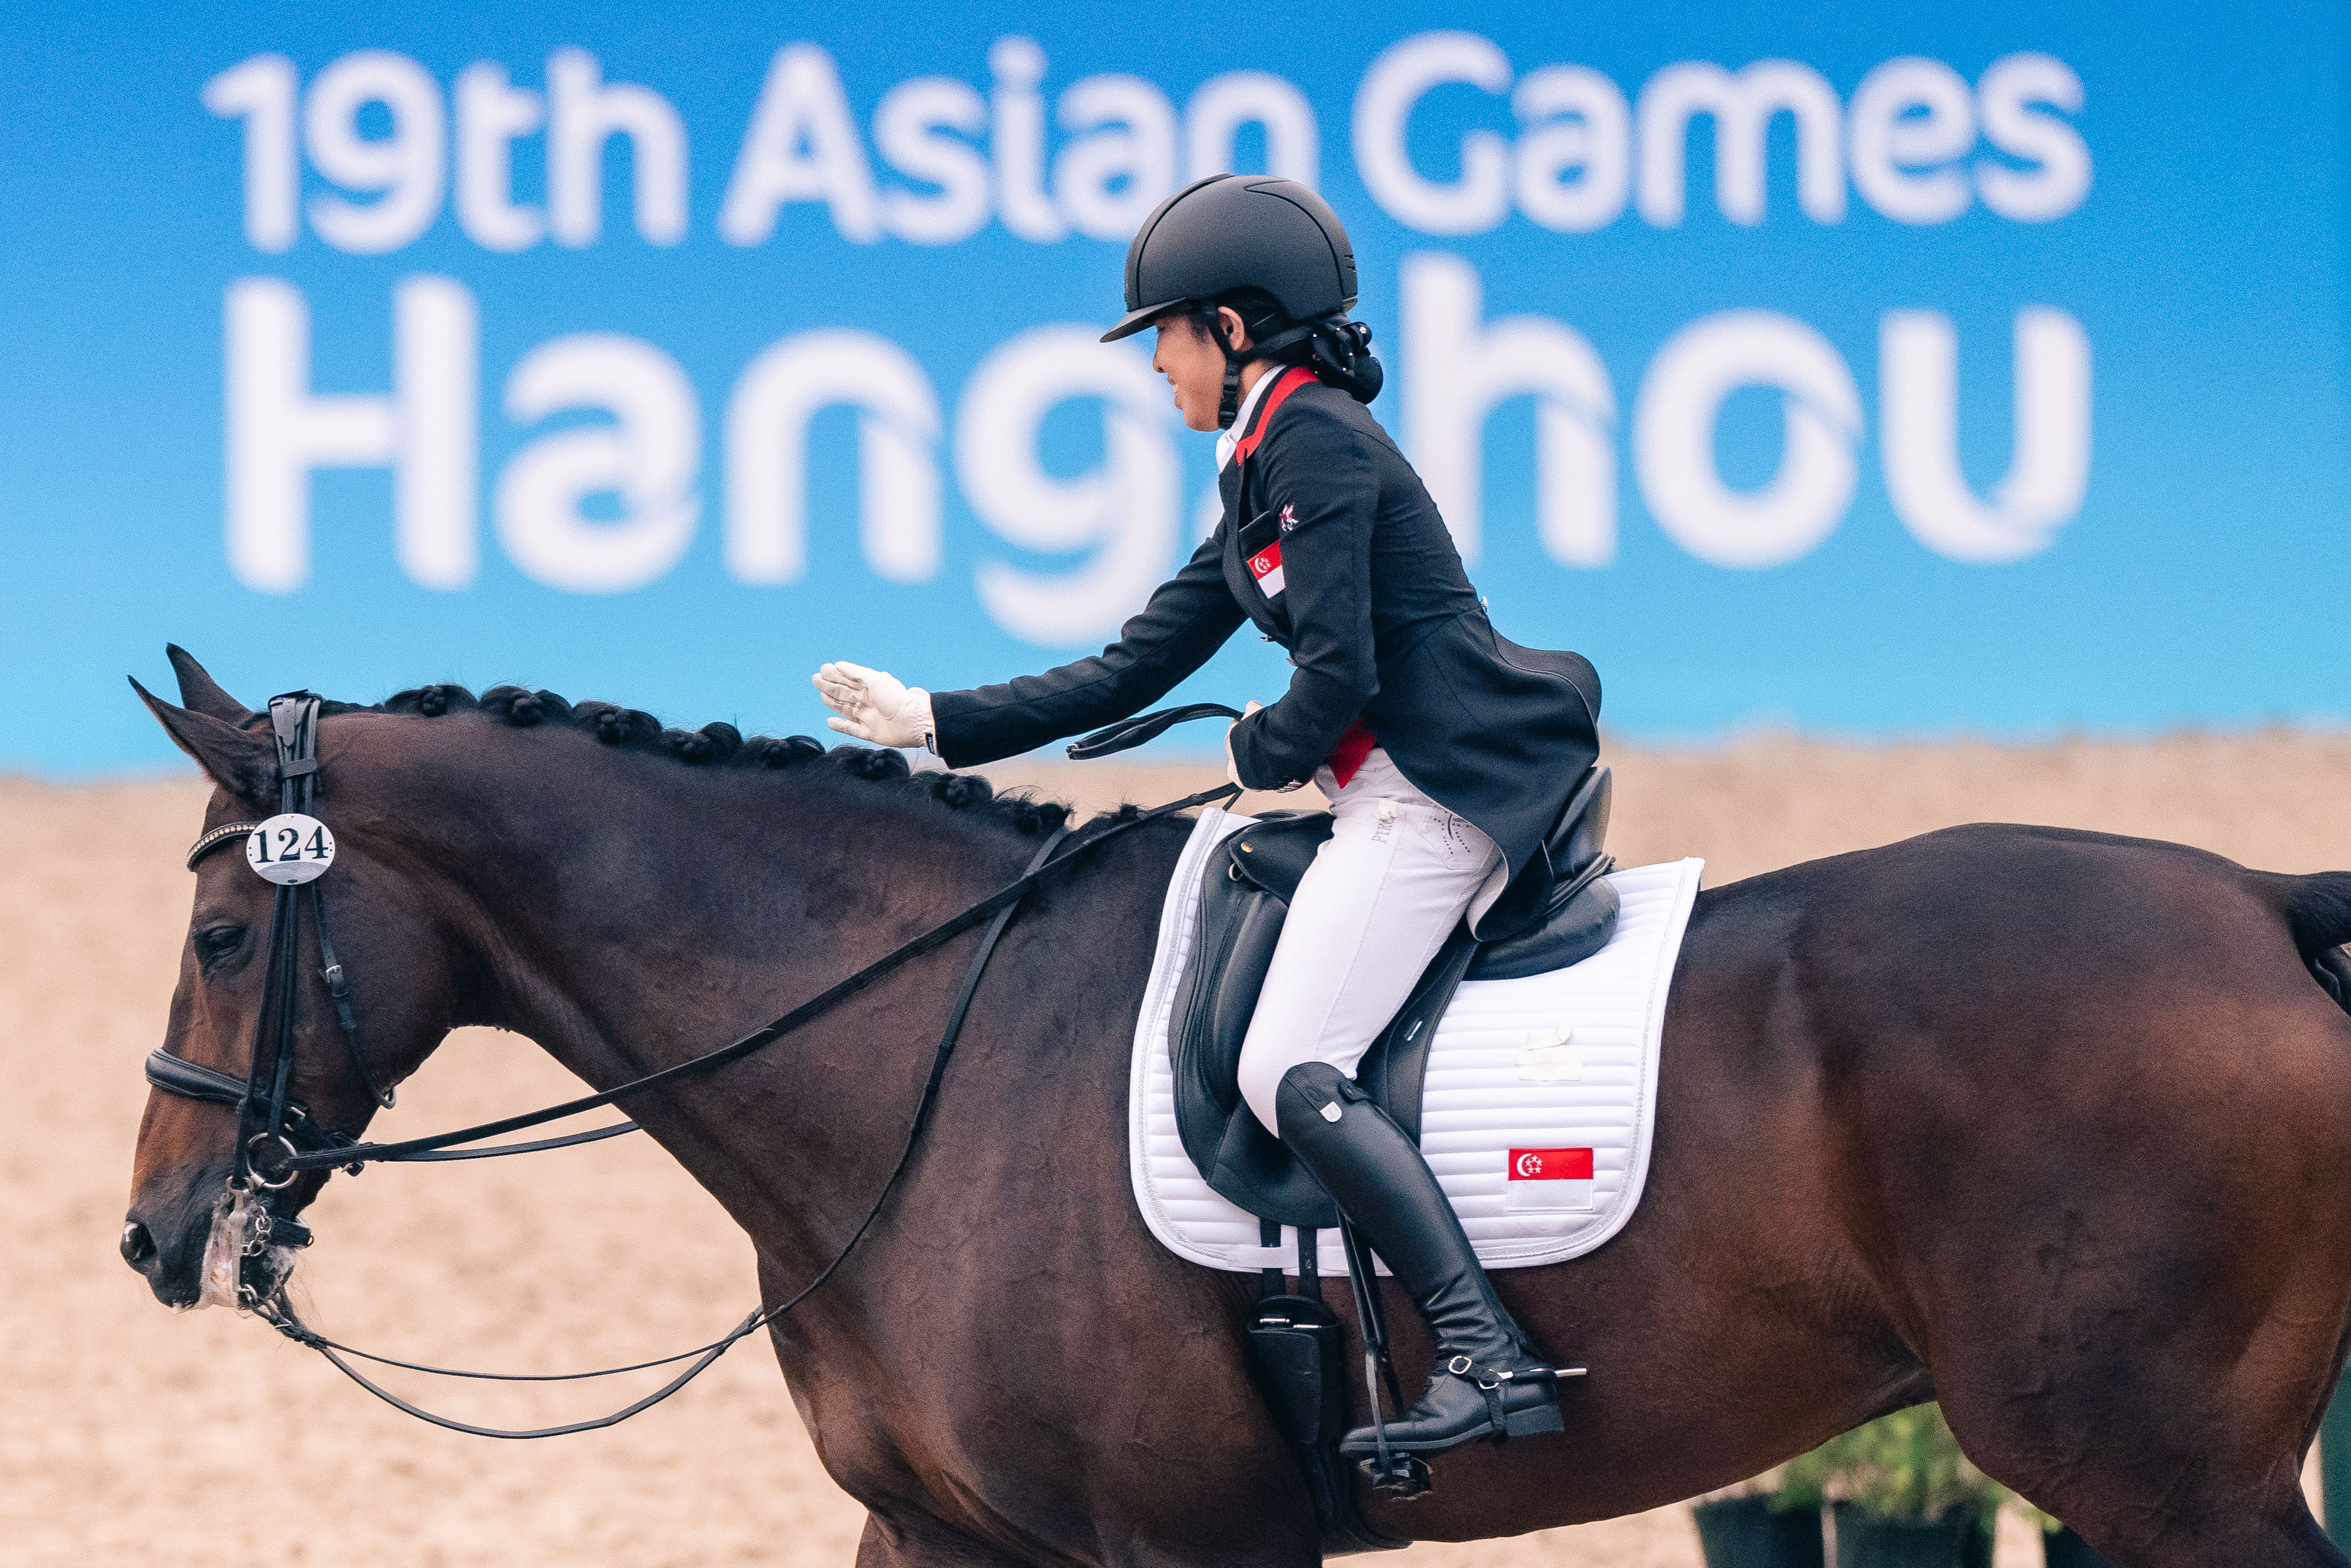 Hangzhou 2022: Equestrian duo grateful to make Asiad debuts